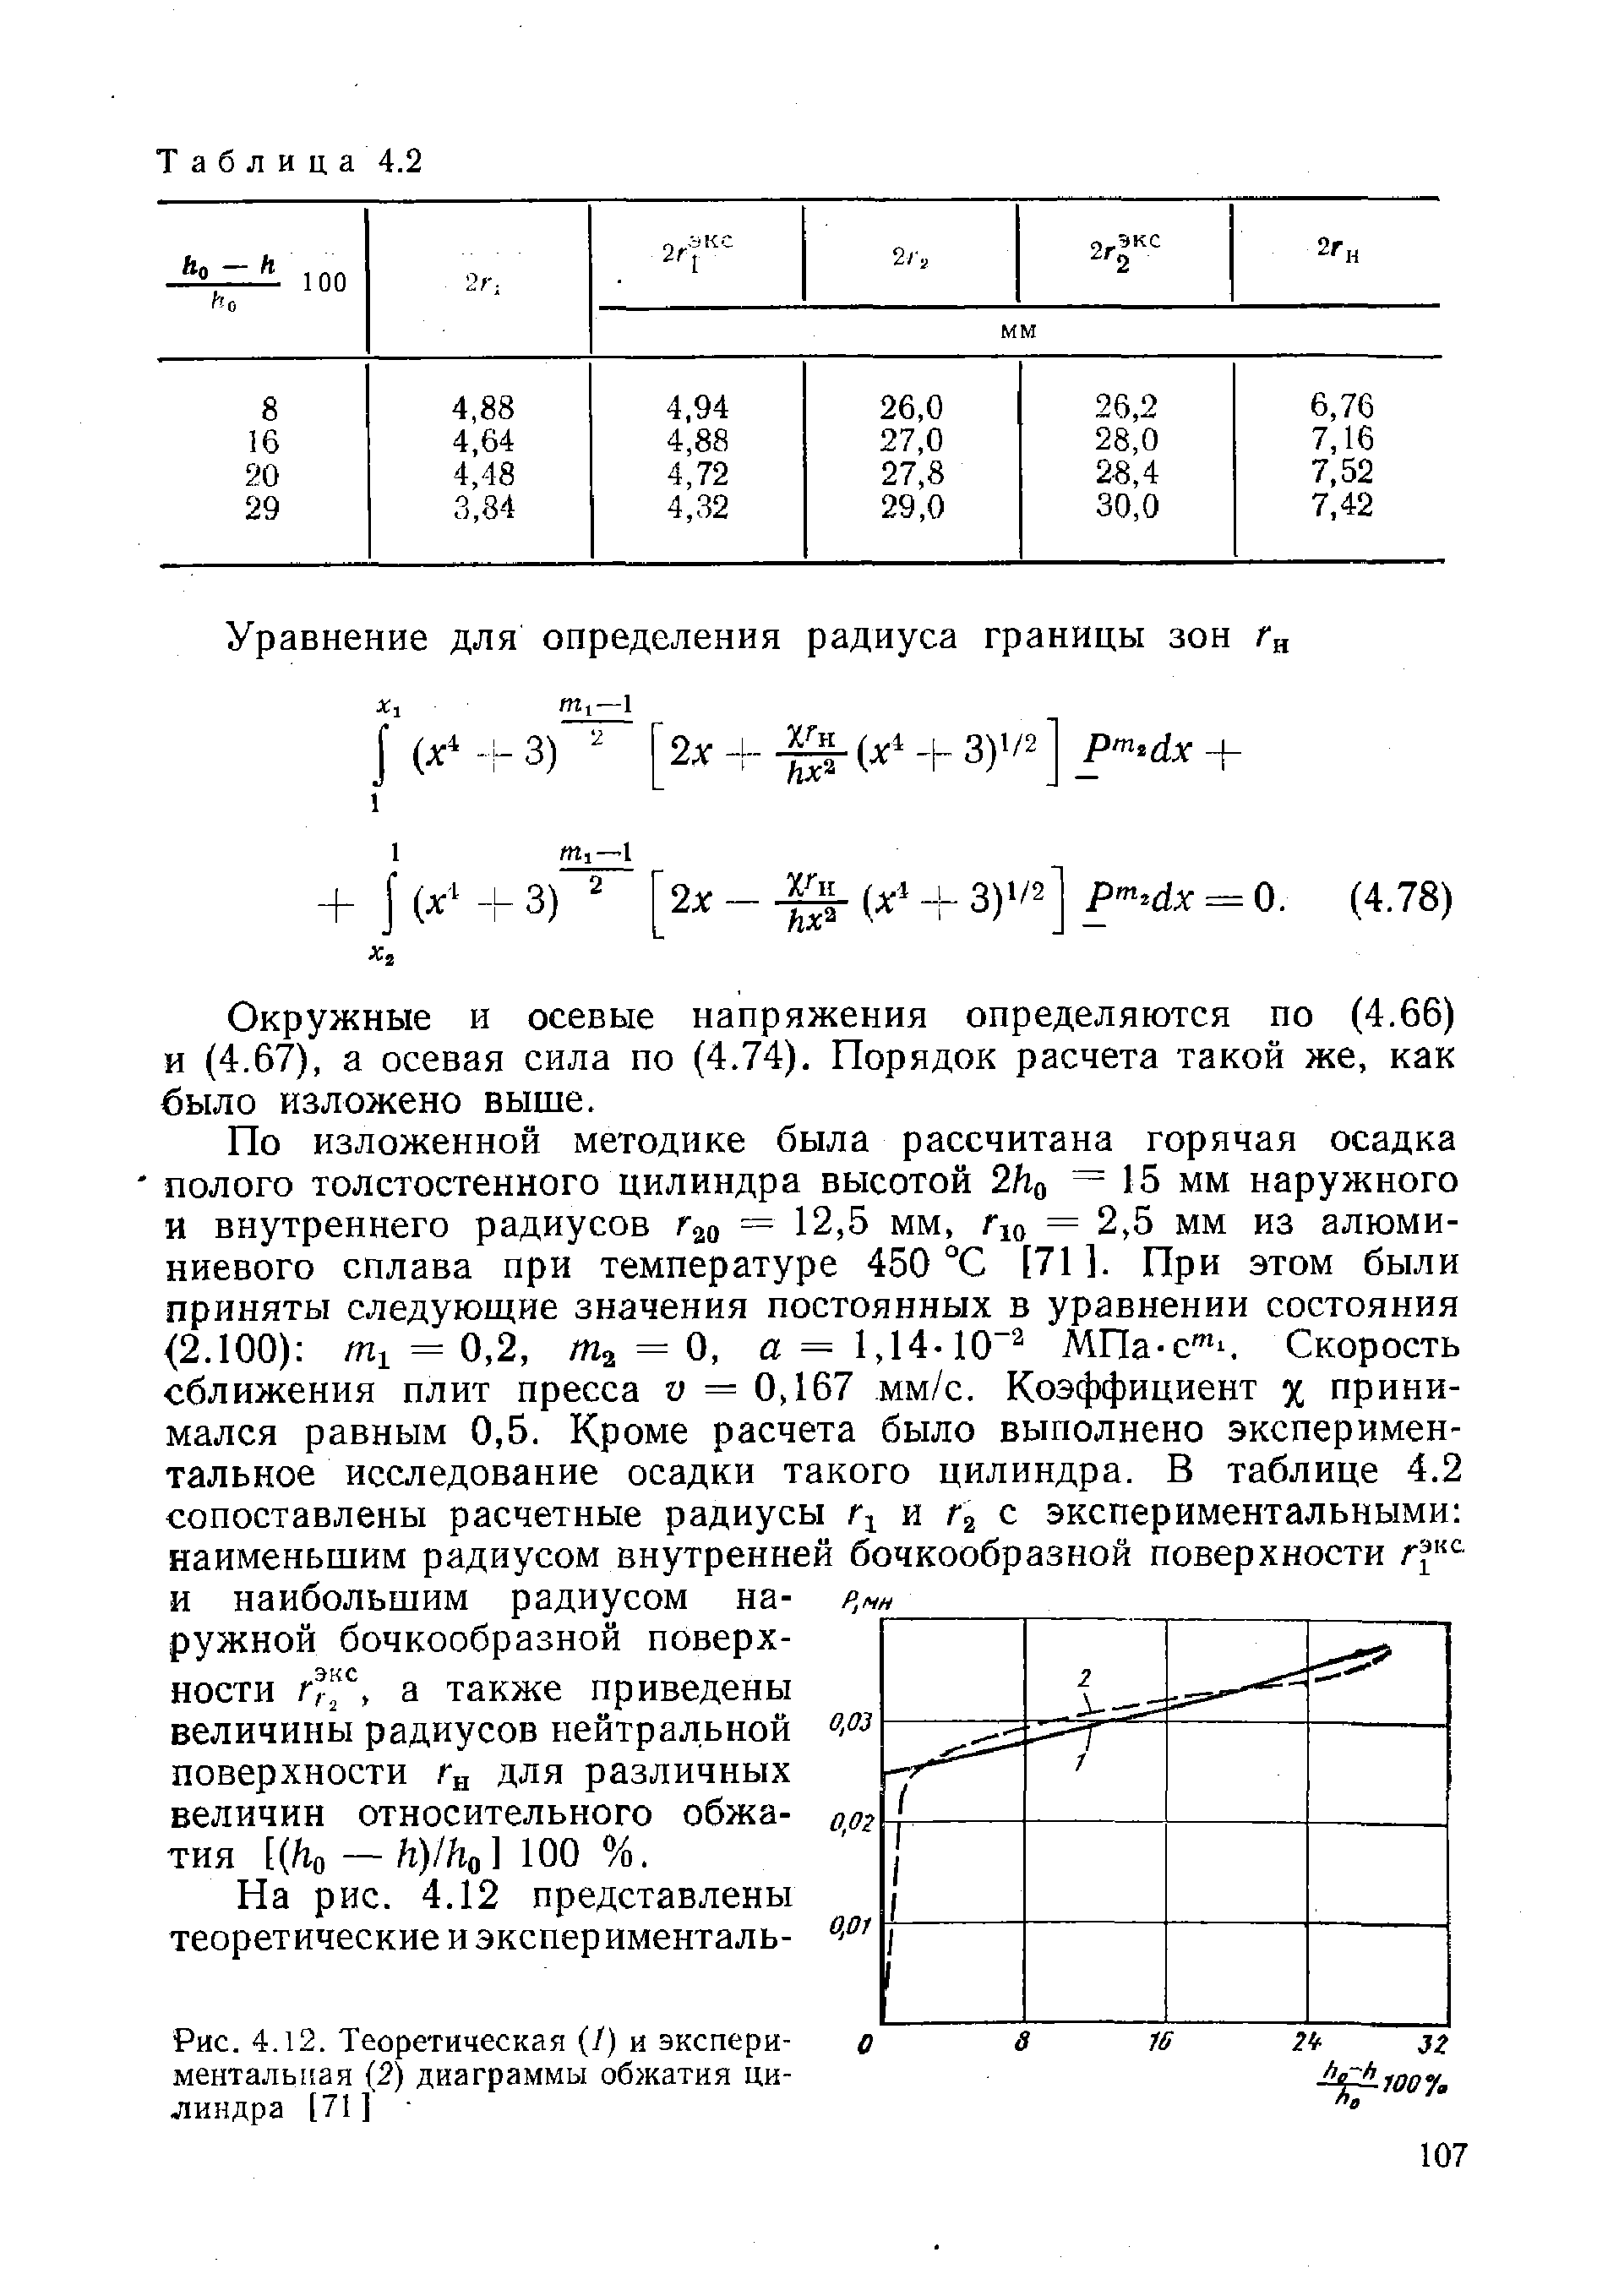 Рис. 4.12. Теоретическая (/) и экспериментальная 2) диаграммы обжатия цилиндра [71] 
